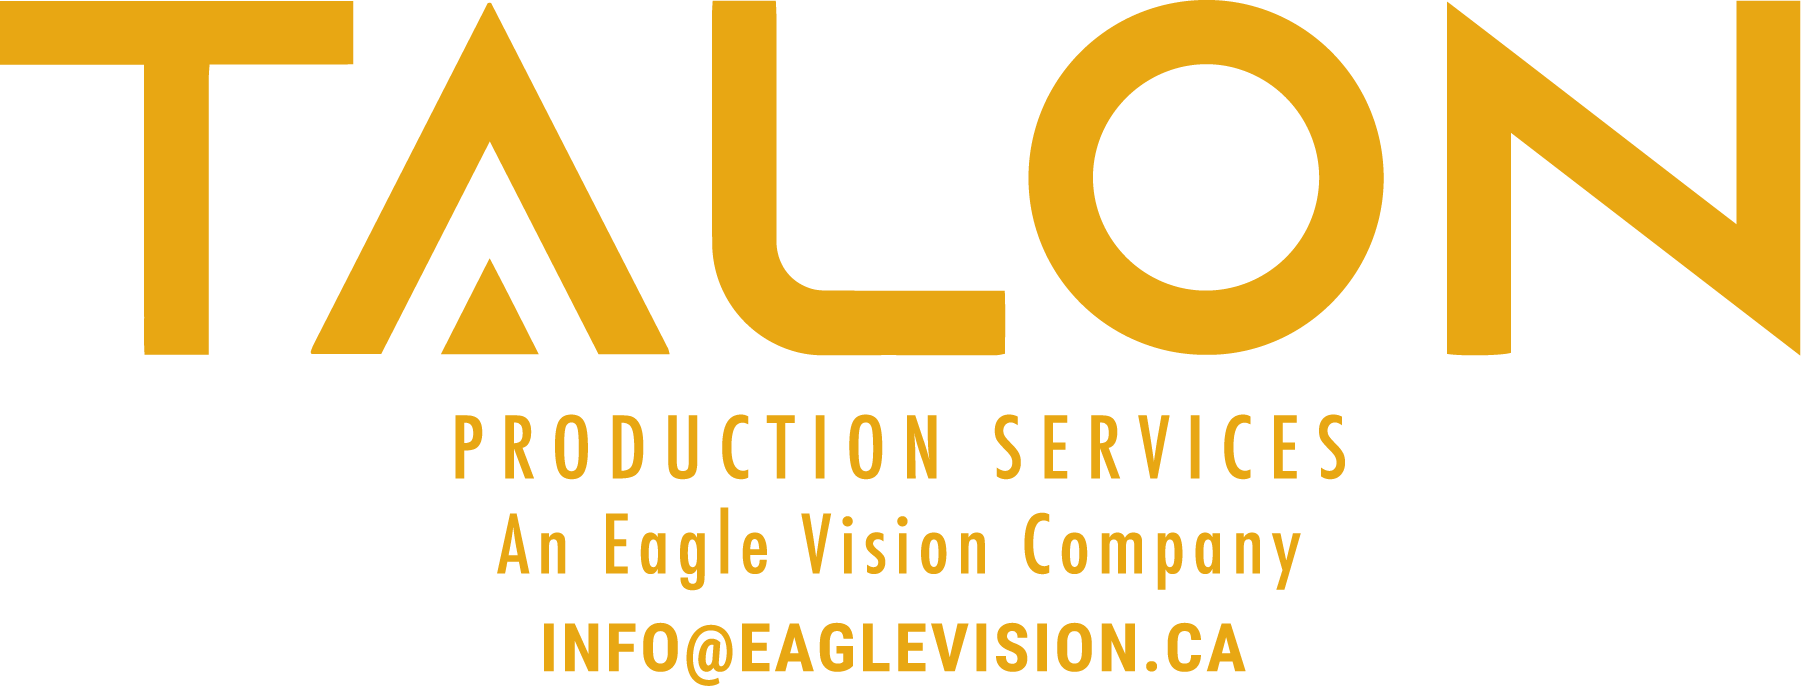 Talon Production Services.png